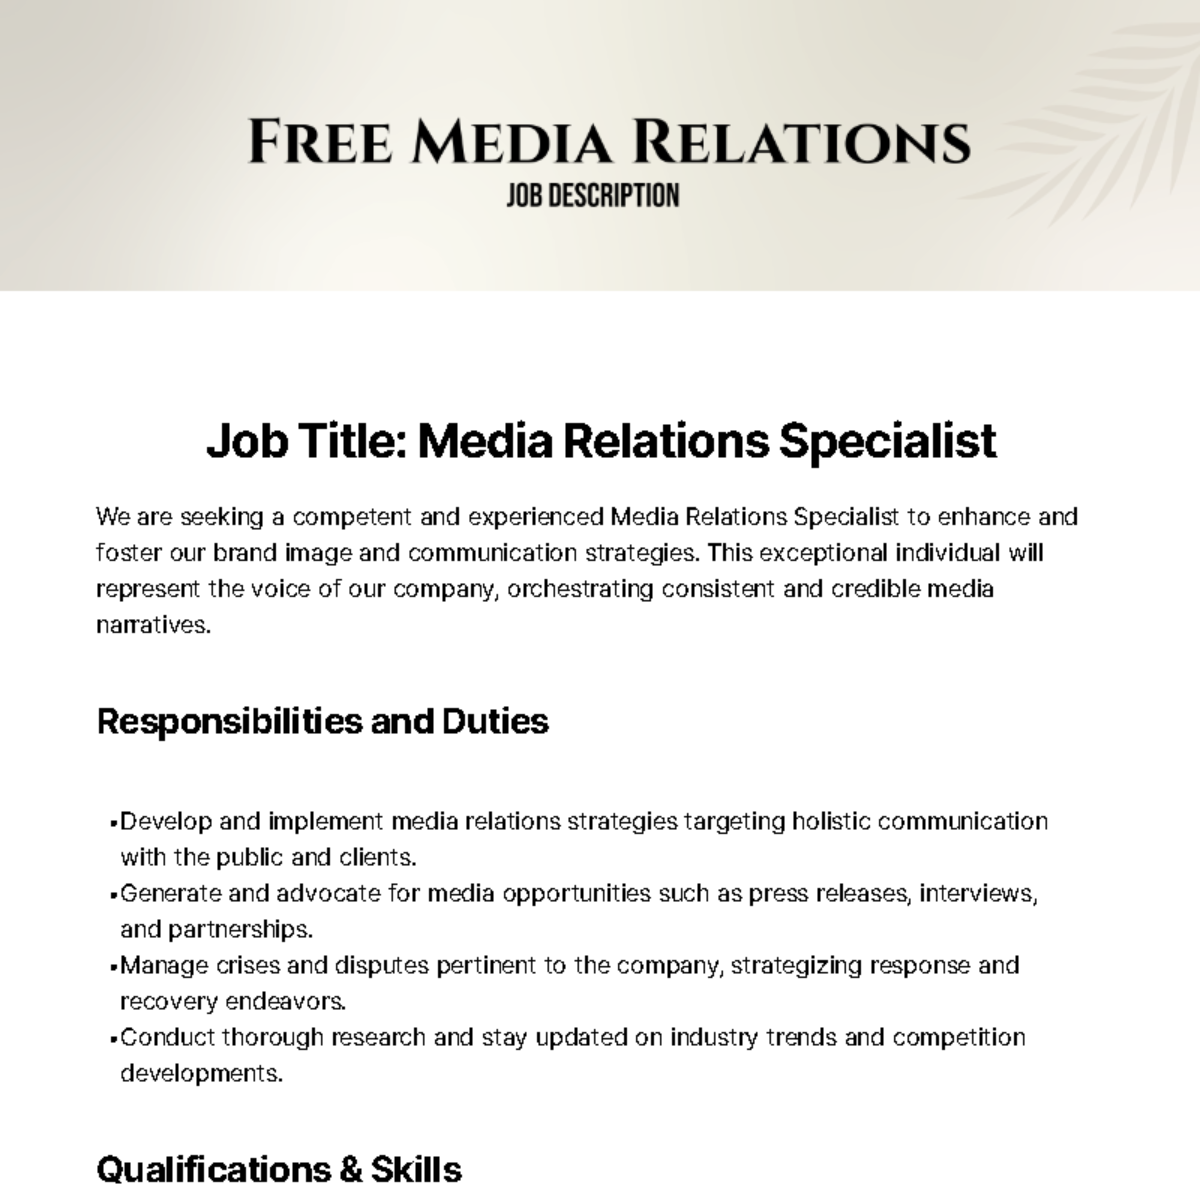 Free Media Relations Job Description Template